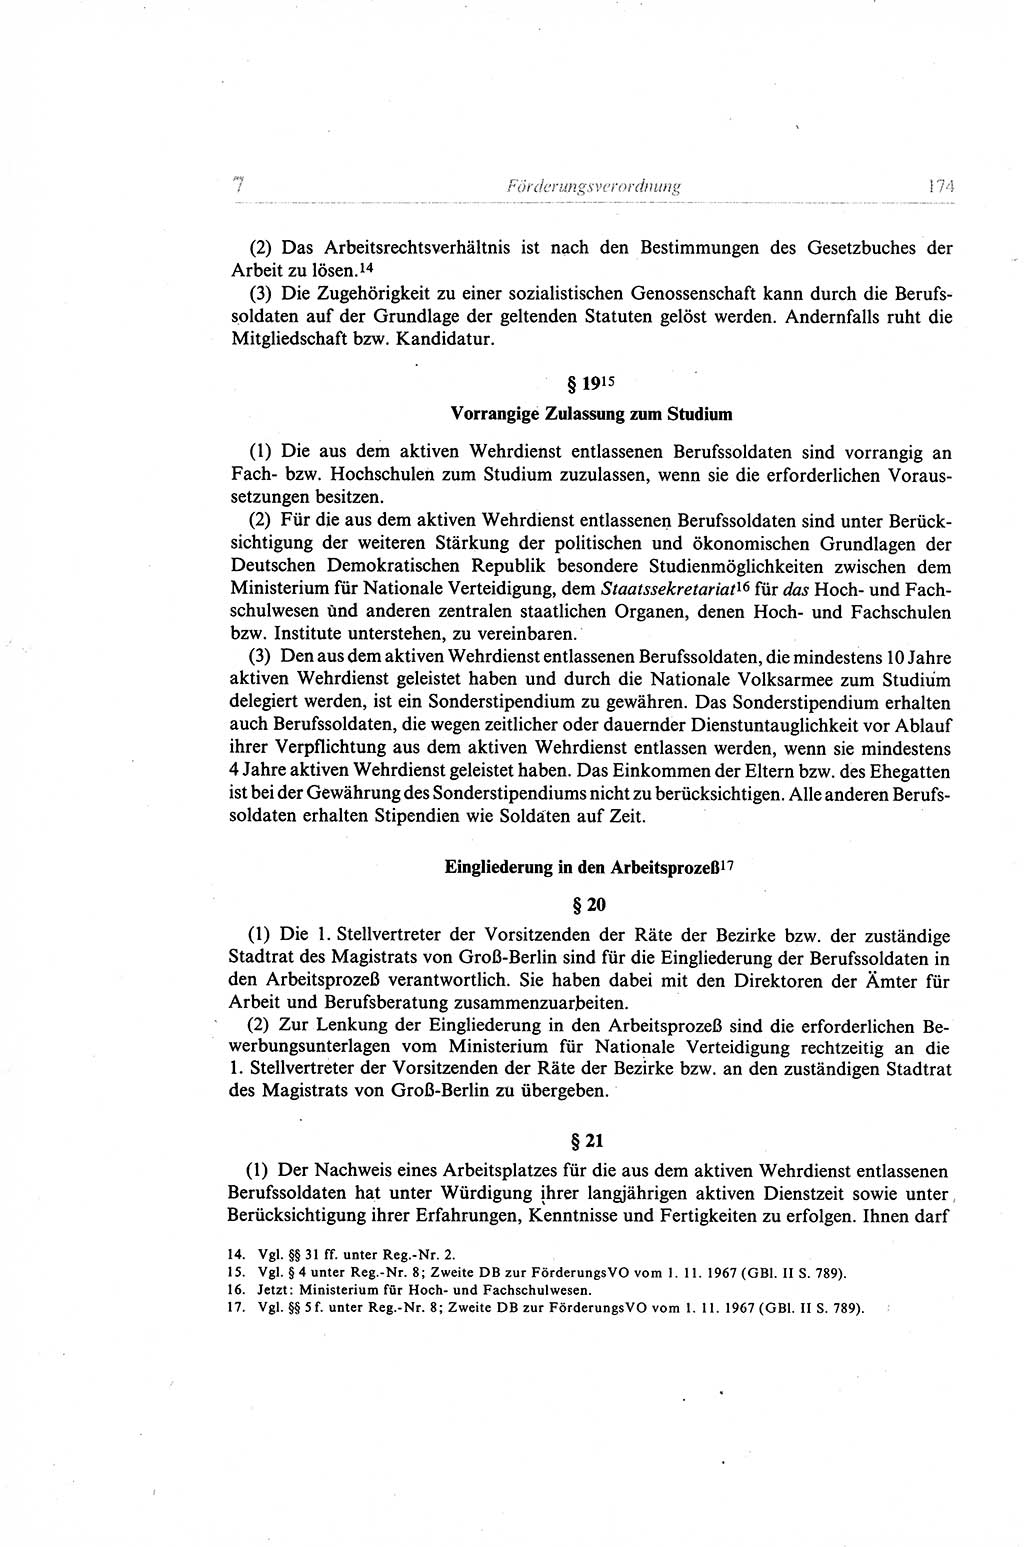 Gesetzbuch der Arbeit (GBA) und andere ausgewählte rechtliche Bestimmungen [Deutsche Demokratische Republik (DDR)] 1968, Seite 174 (GBA DDR 1968, S. 174)